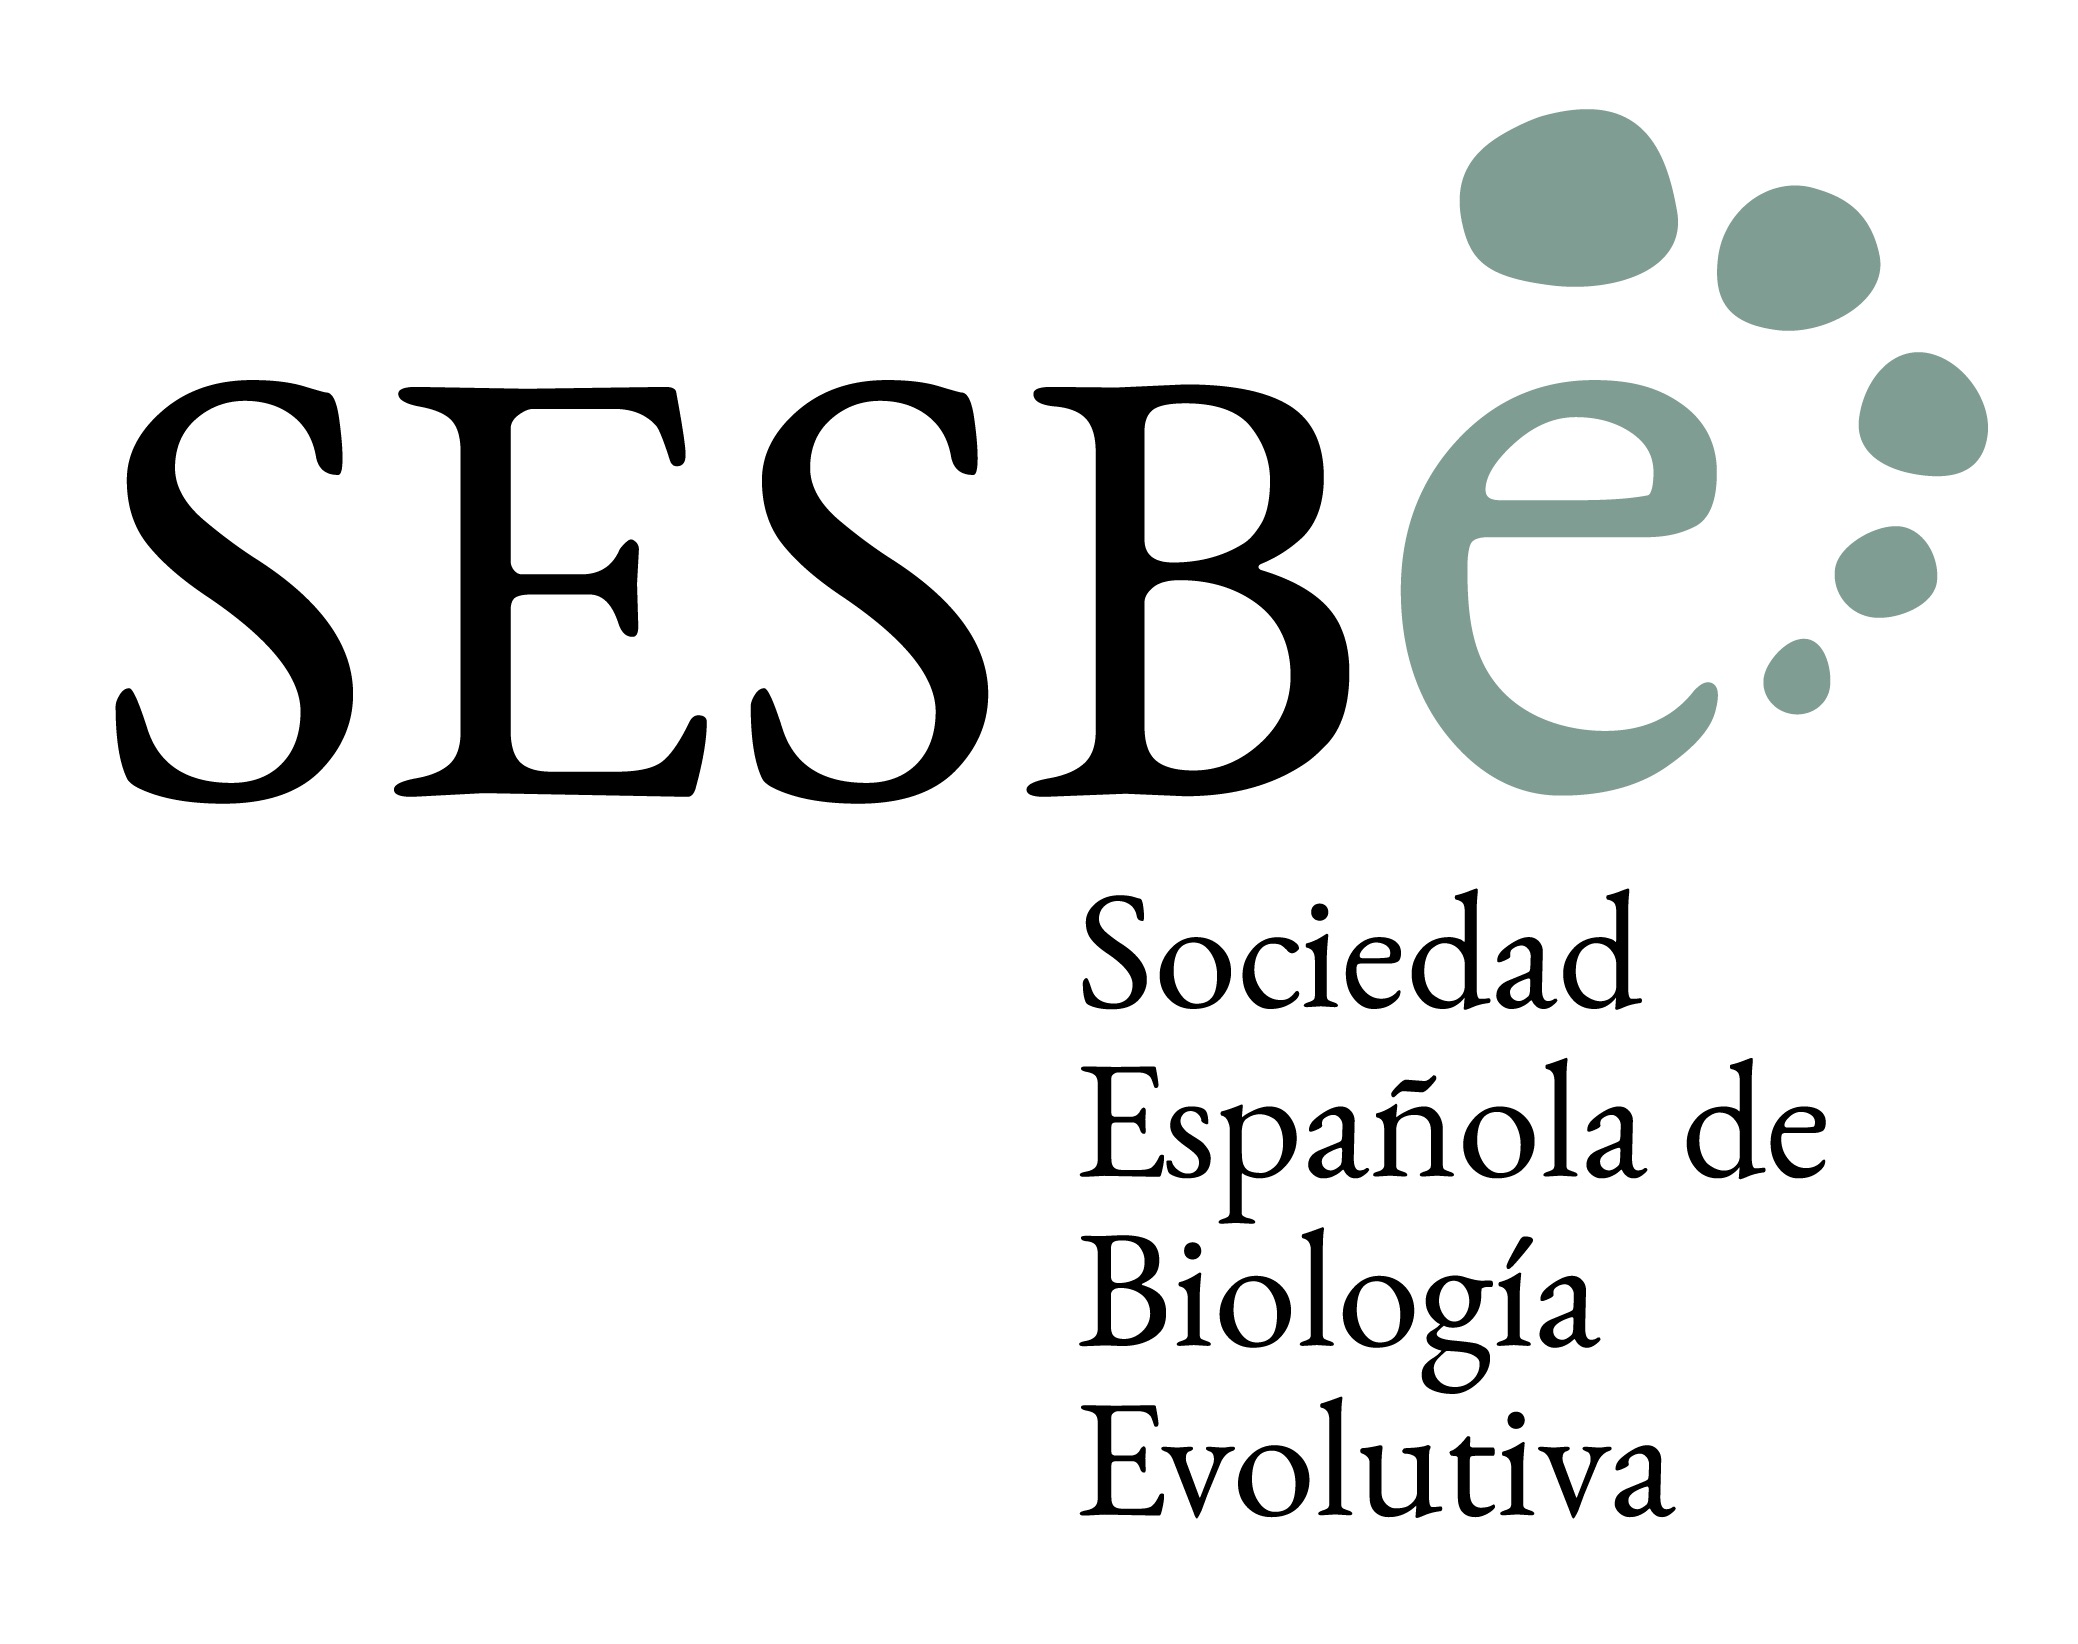 2019-11/sesbe_logo.jpg